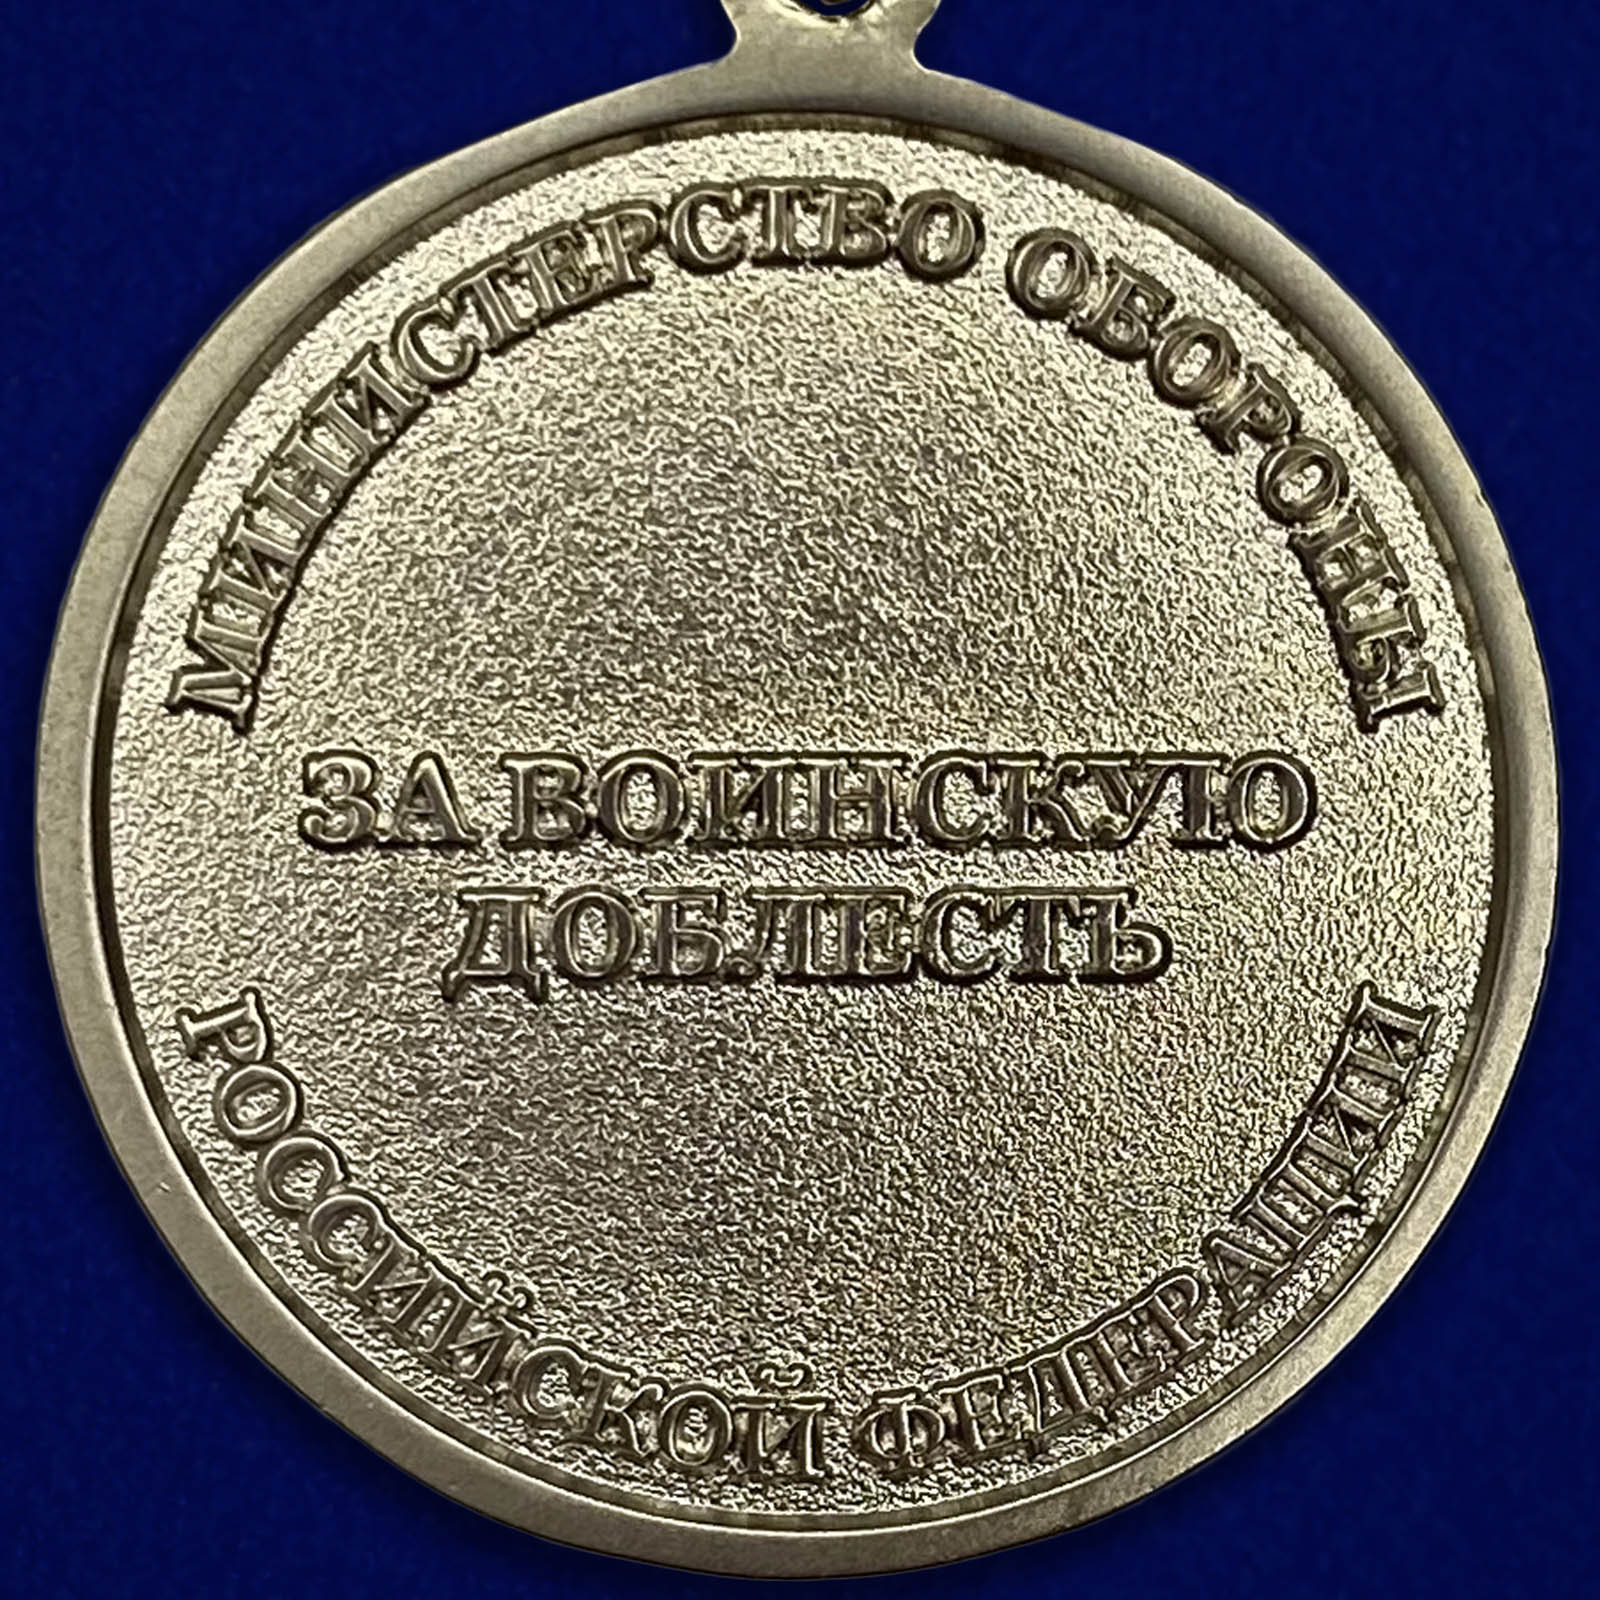 Медаль «За воинскую доблесть» МО РФ 2 степени